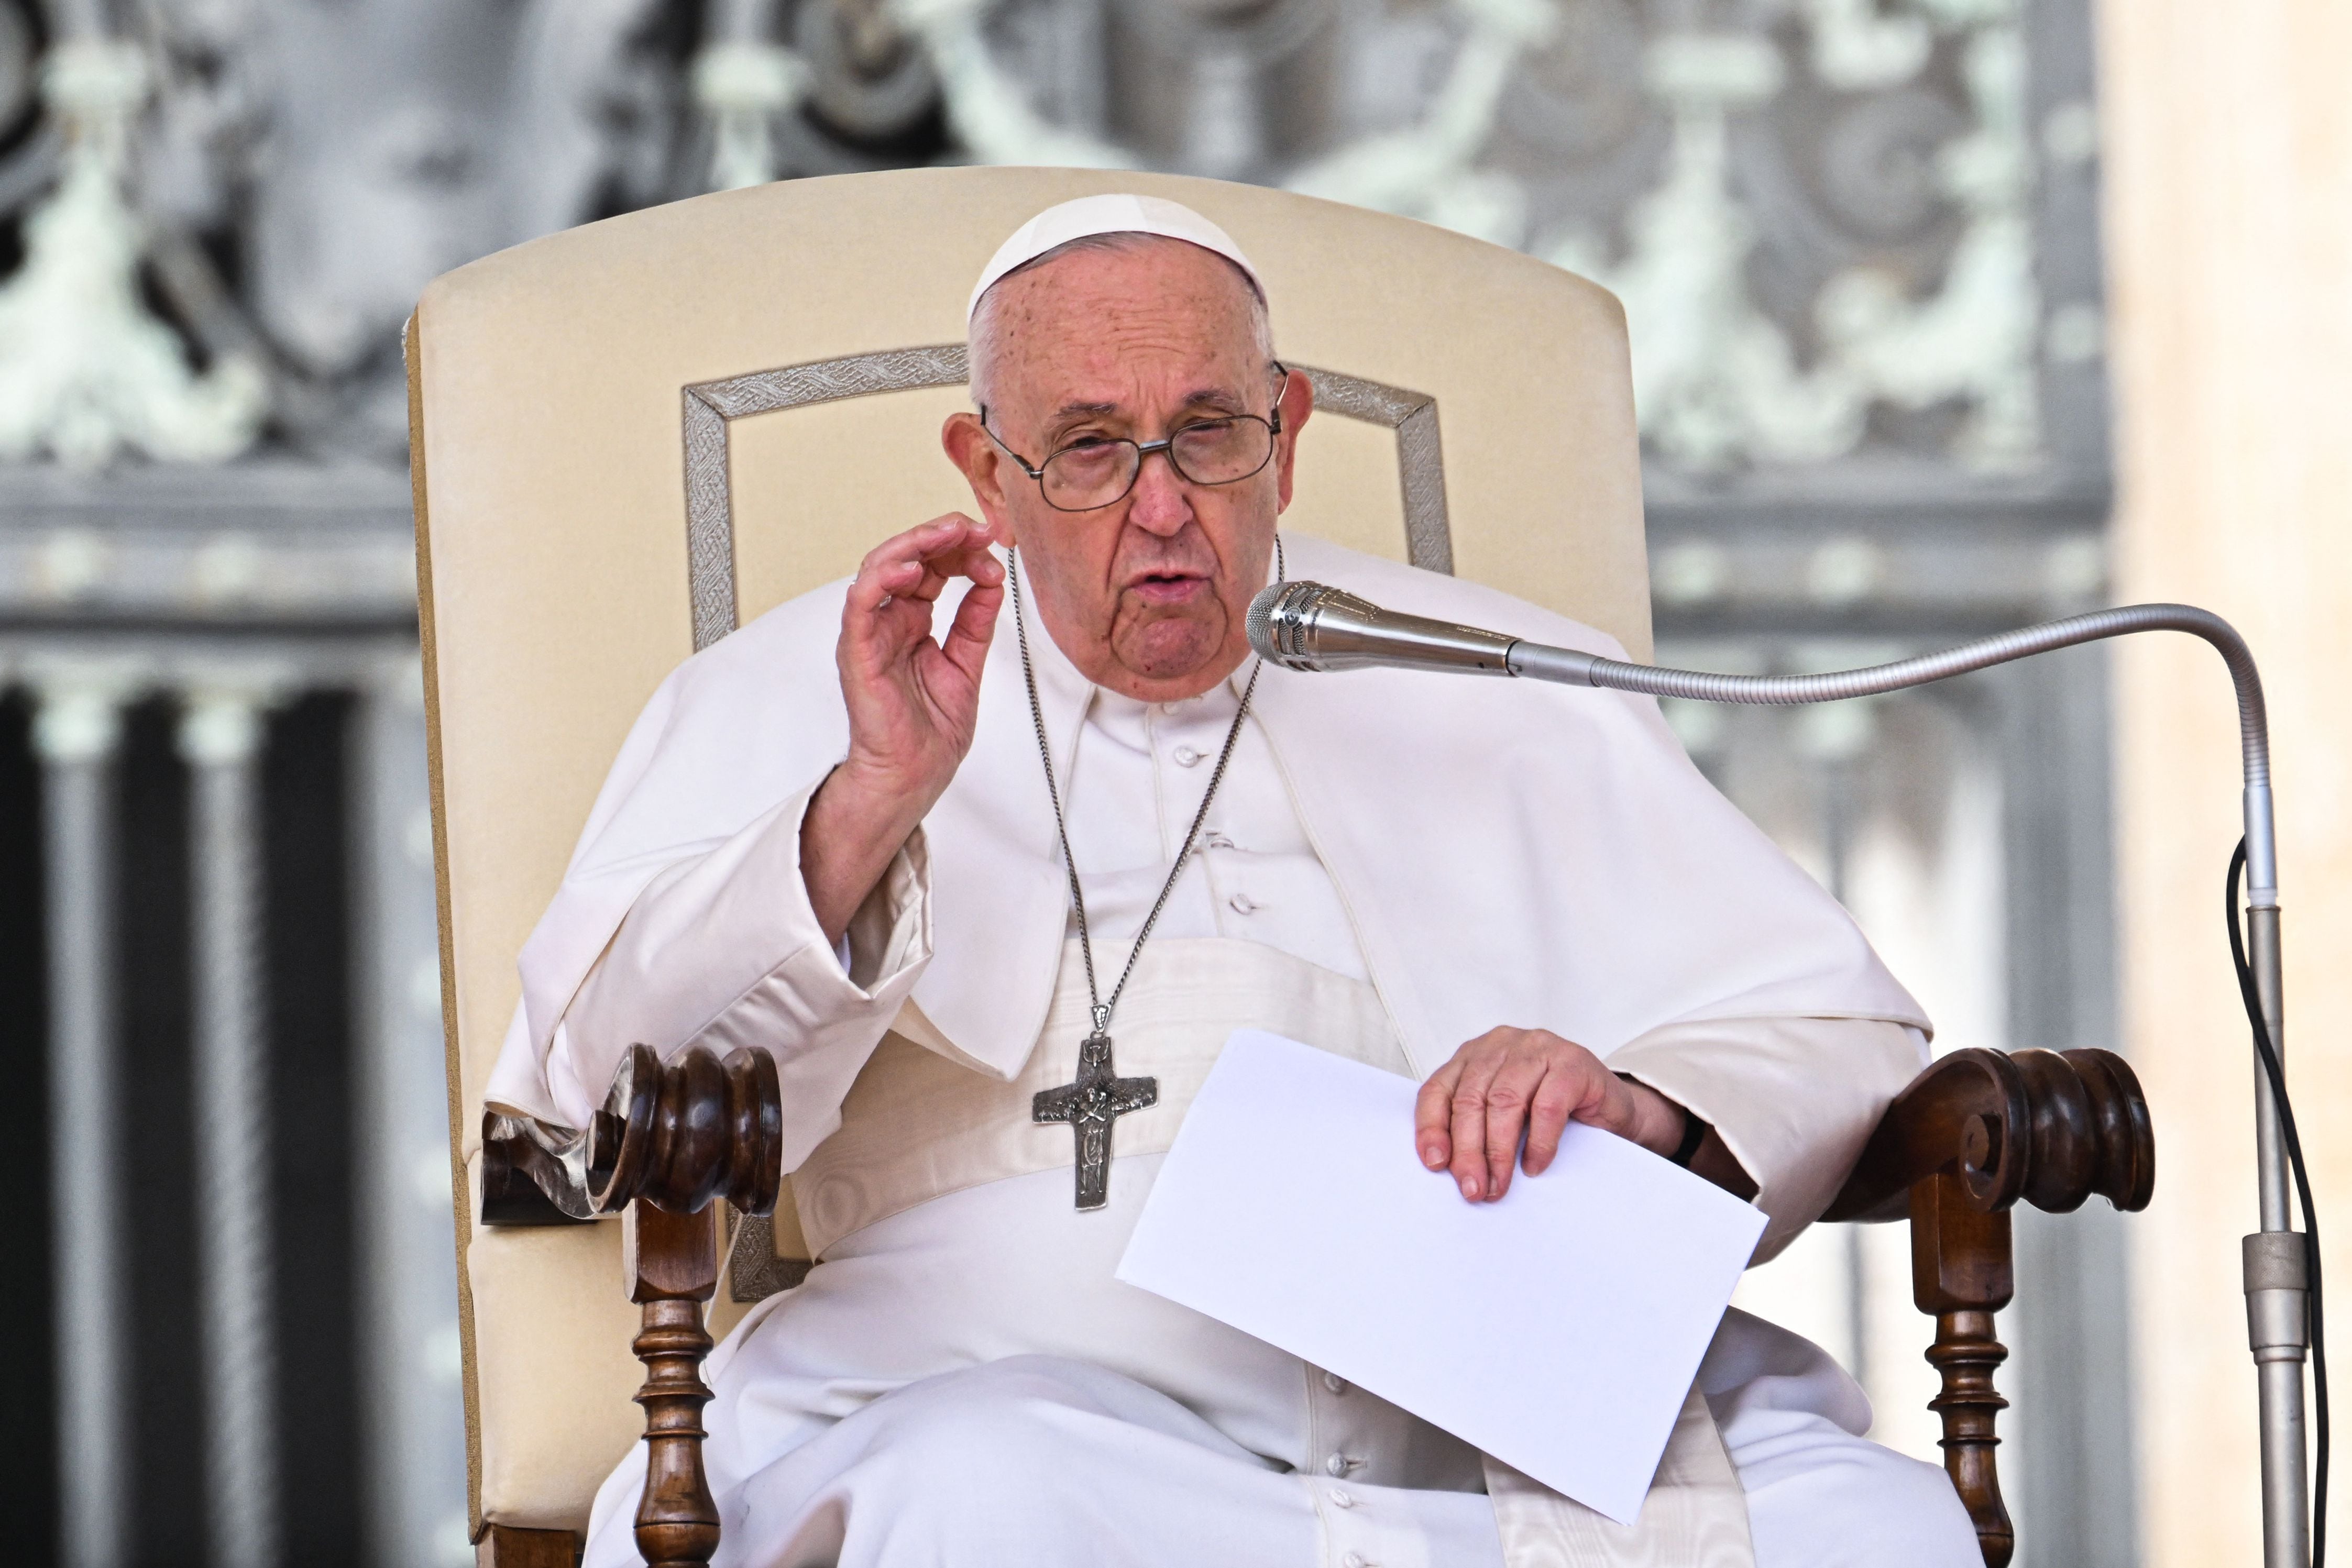 El papa Francisco reiteró su firme oposición a la legalización del consumo de drogas, calificando la idea de liberalizar el uso de estupefacientes como una 'fantasía'.